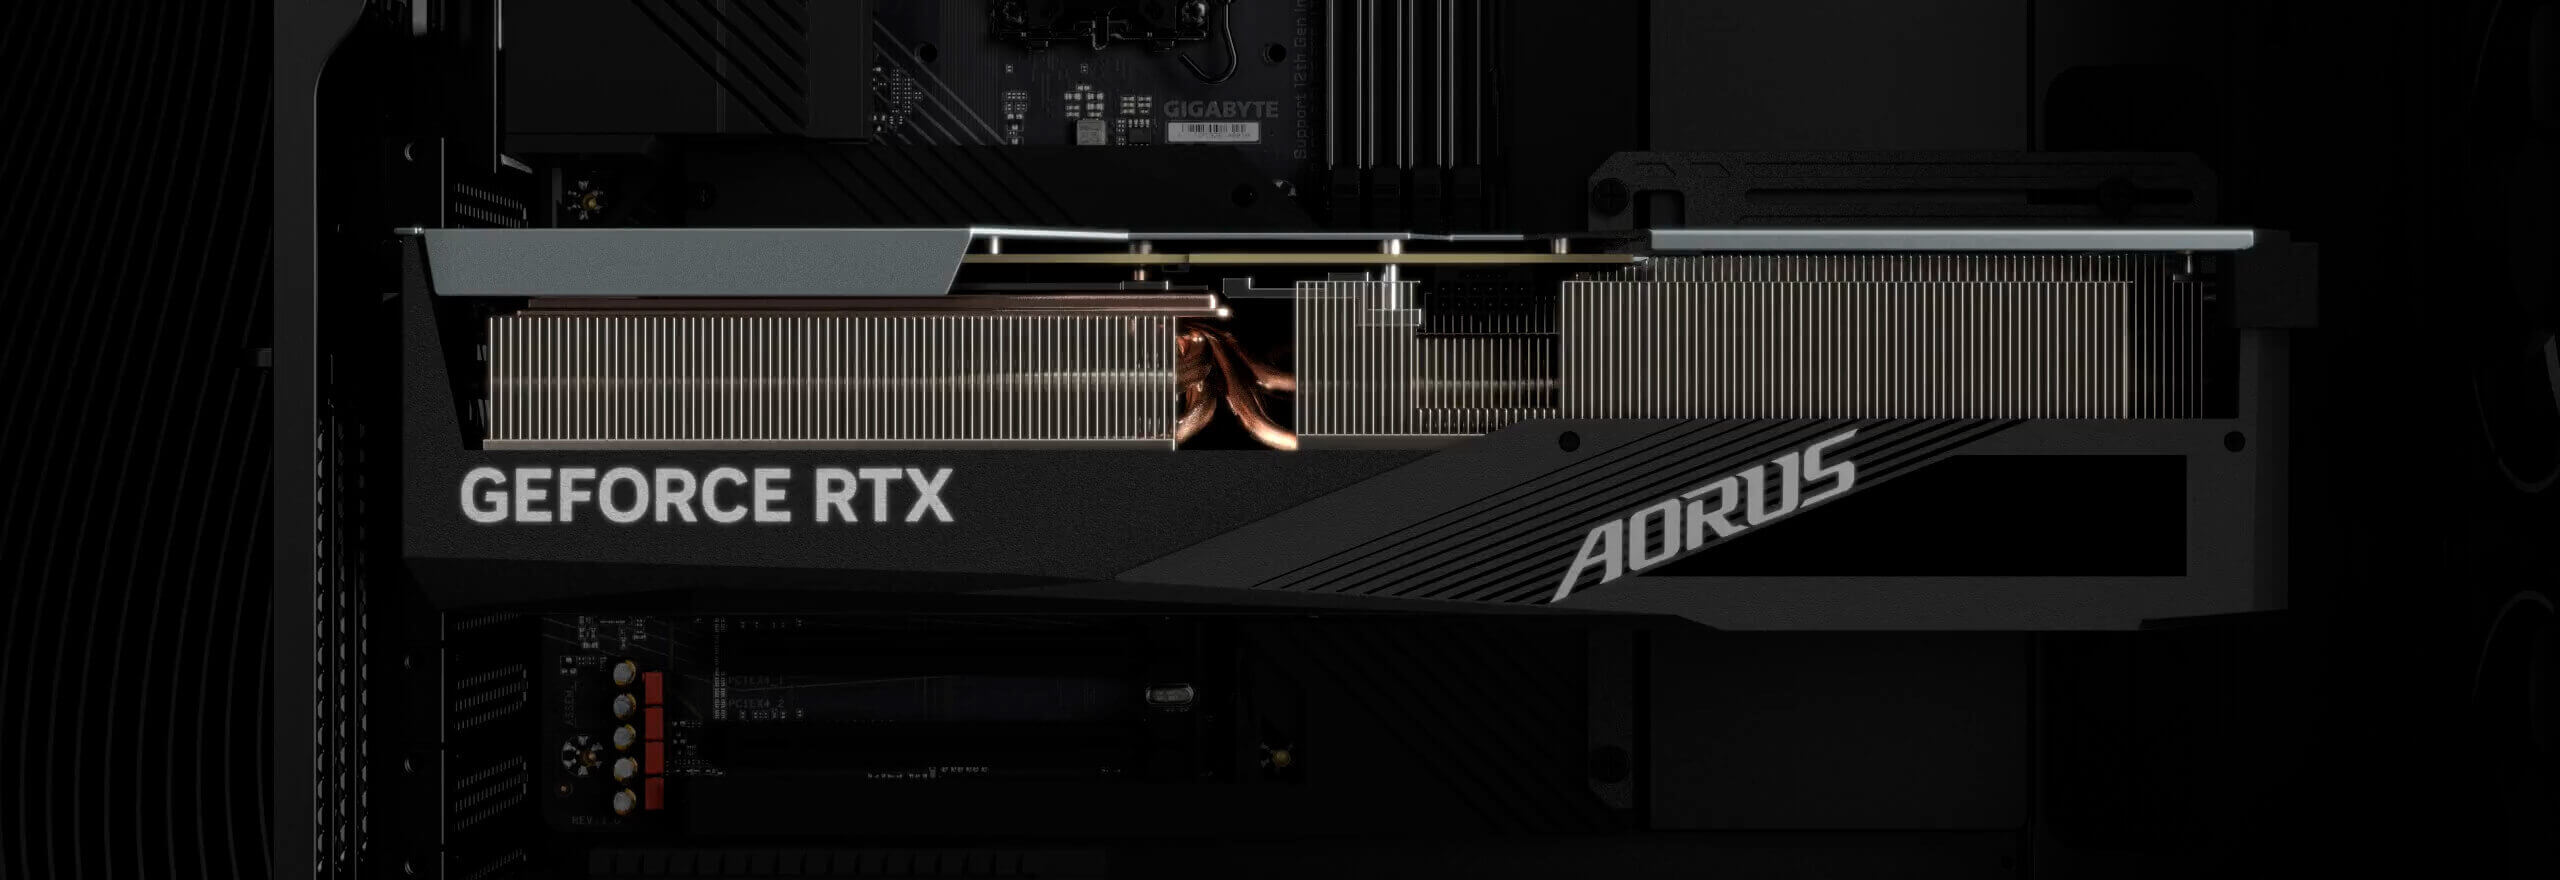 GIGABYTE trình làng card đồ họa AORUS NVIDIA GeForce RTX 40 series mới nhất